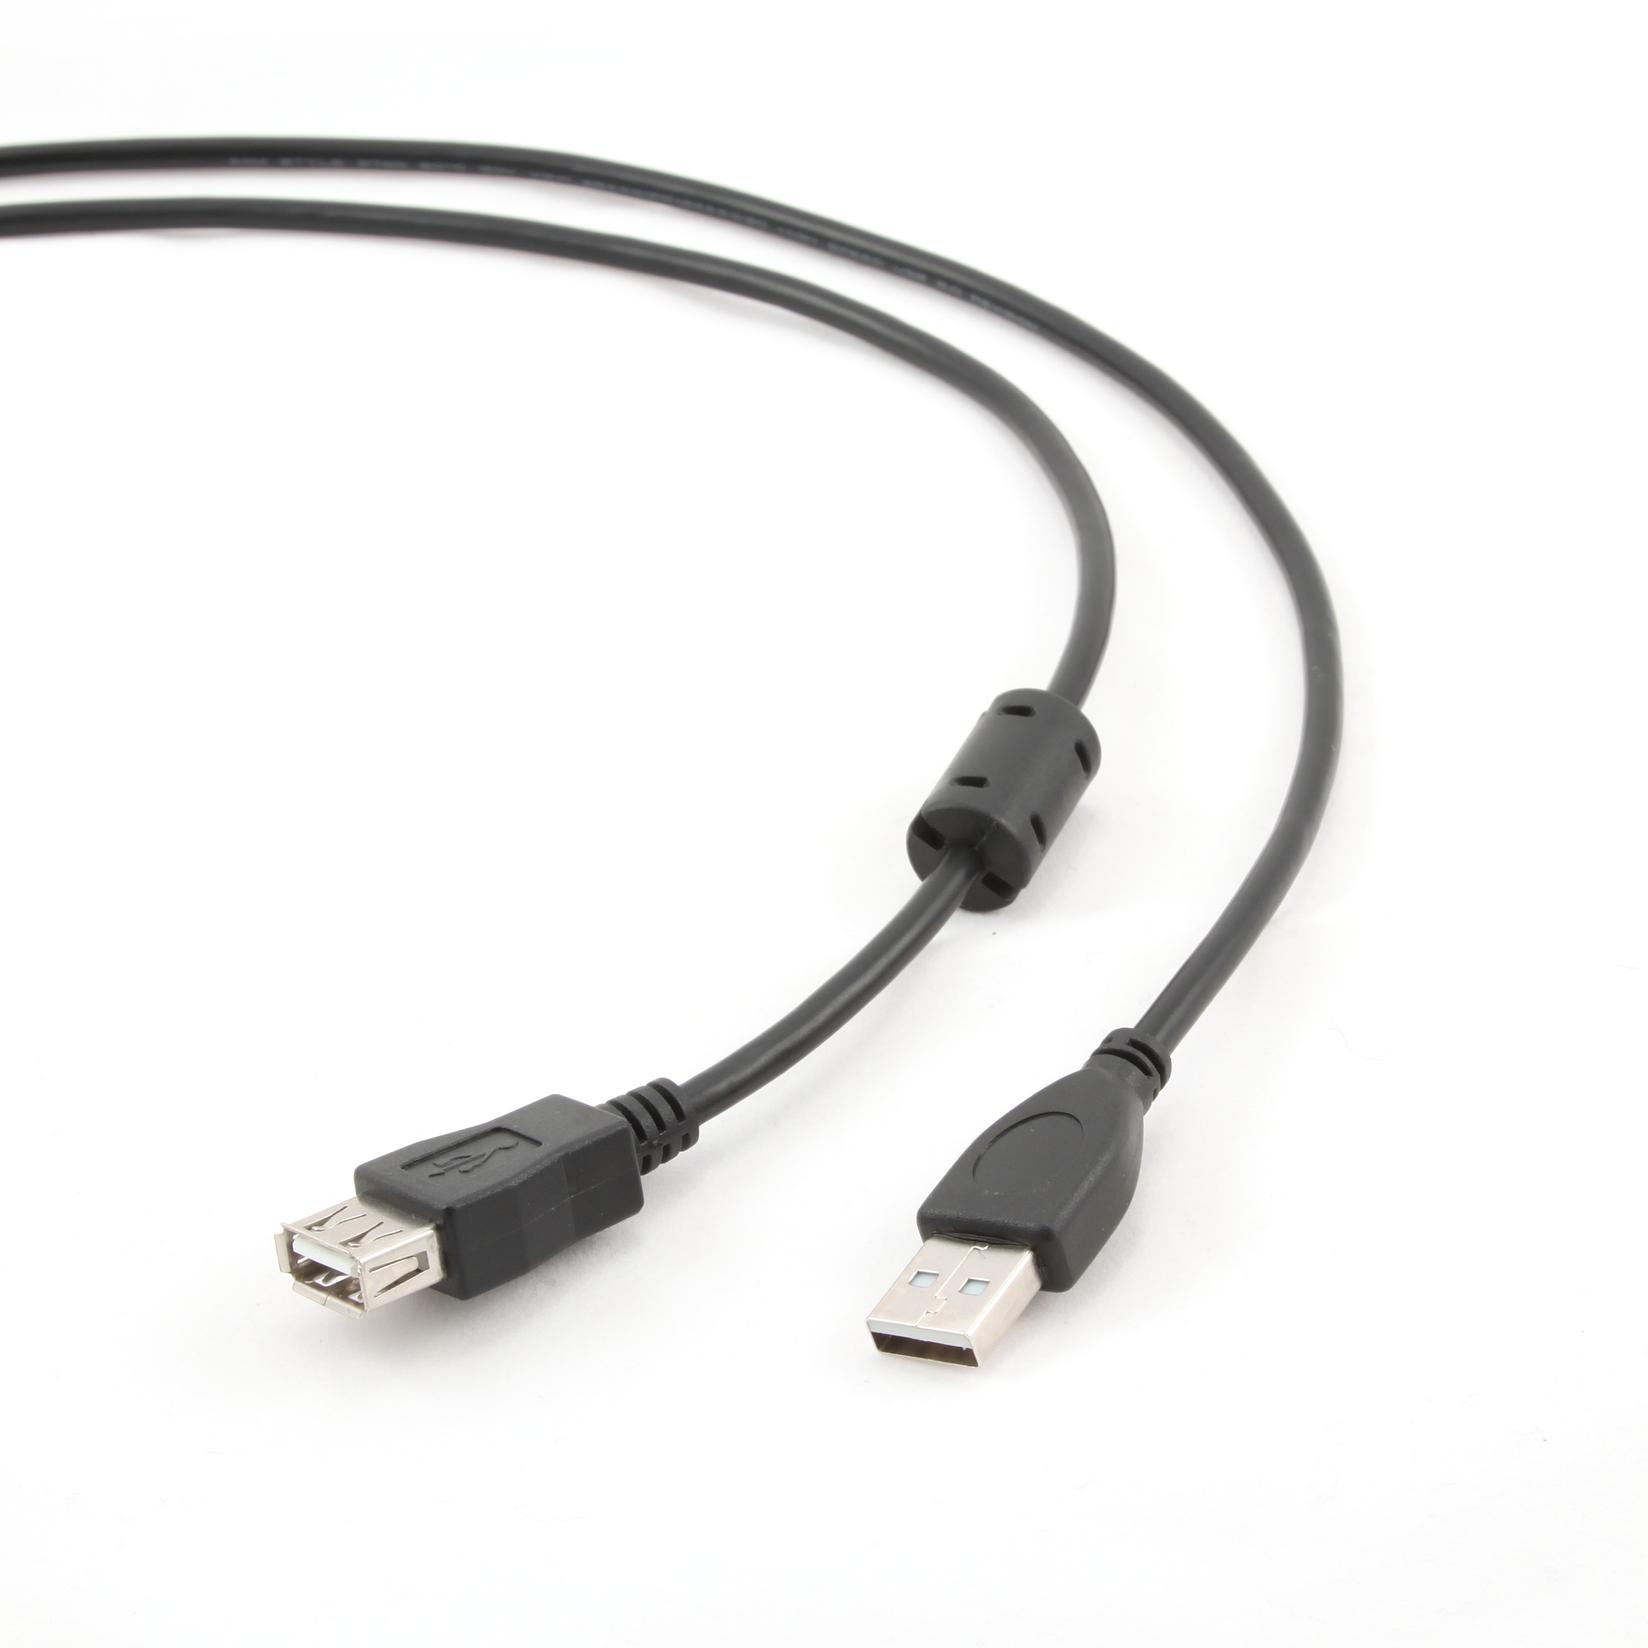 Slike Gembird USB 2.0 A M/FM USB kabl 1,8 m Crno